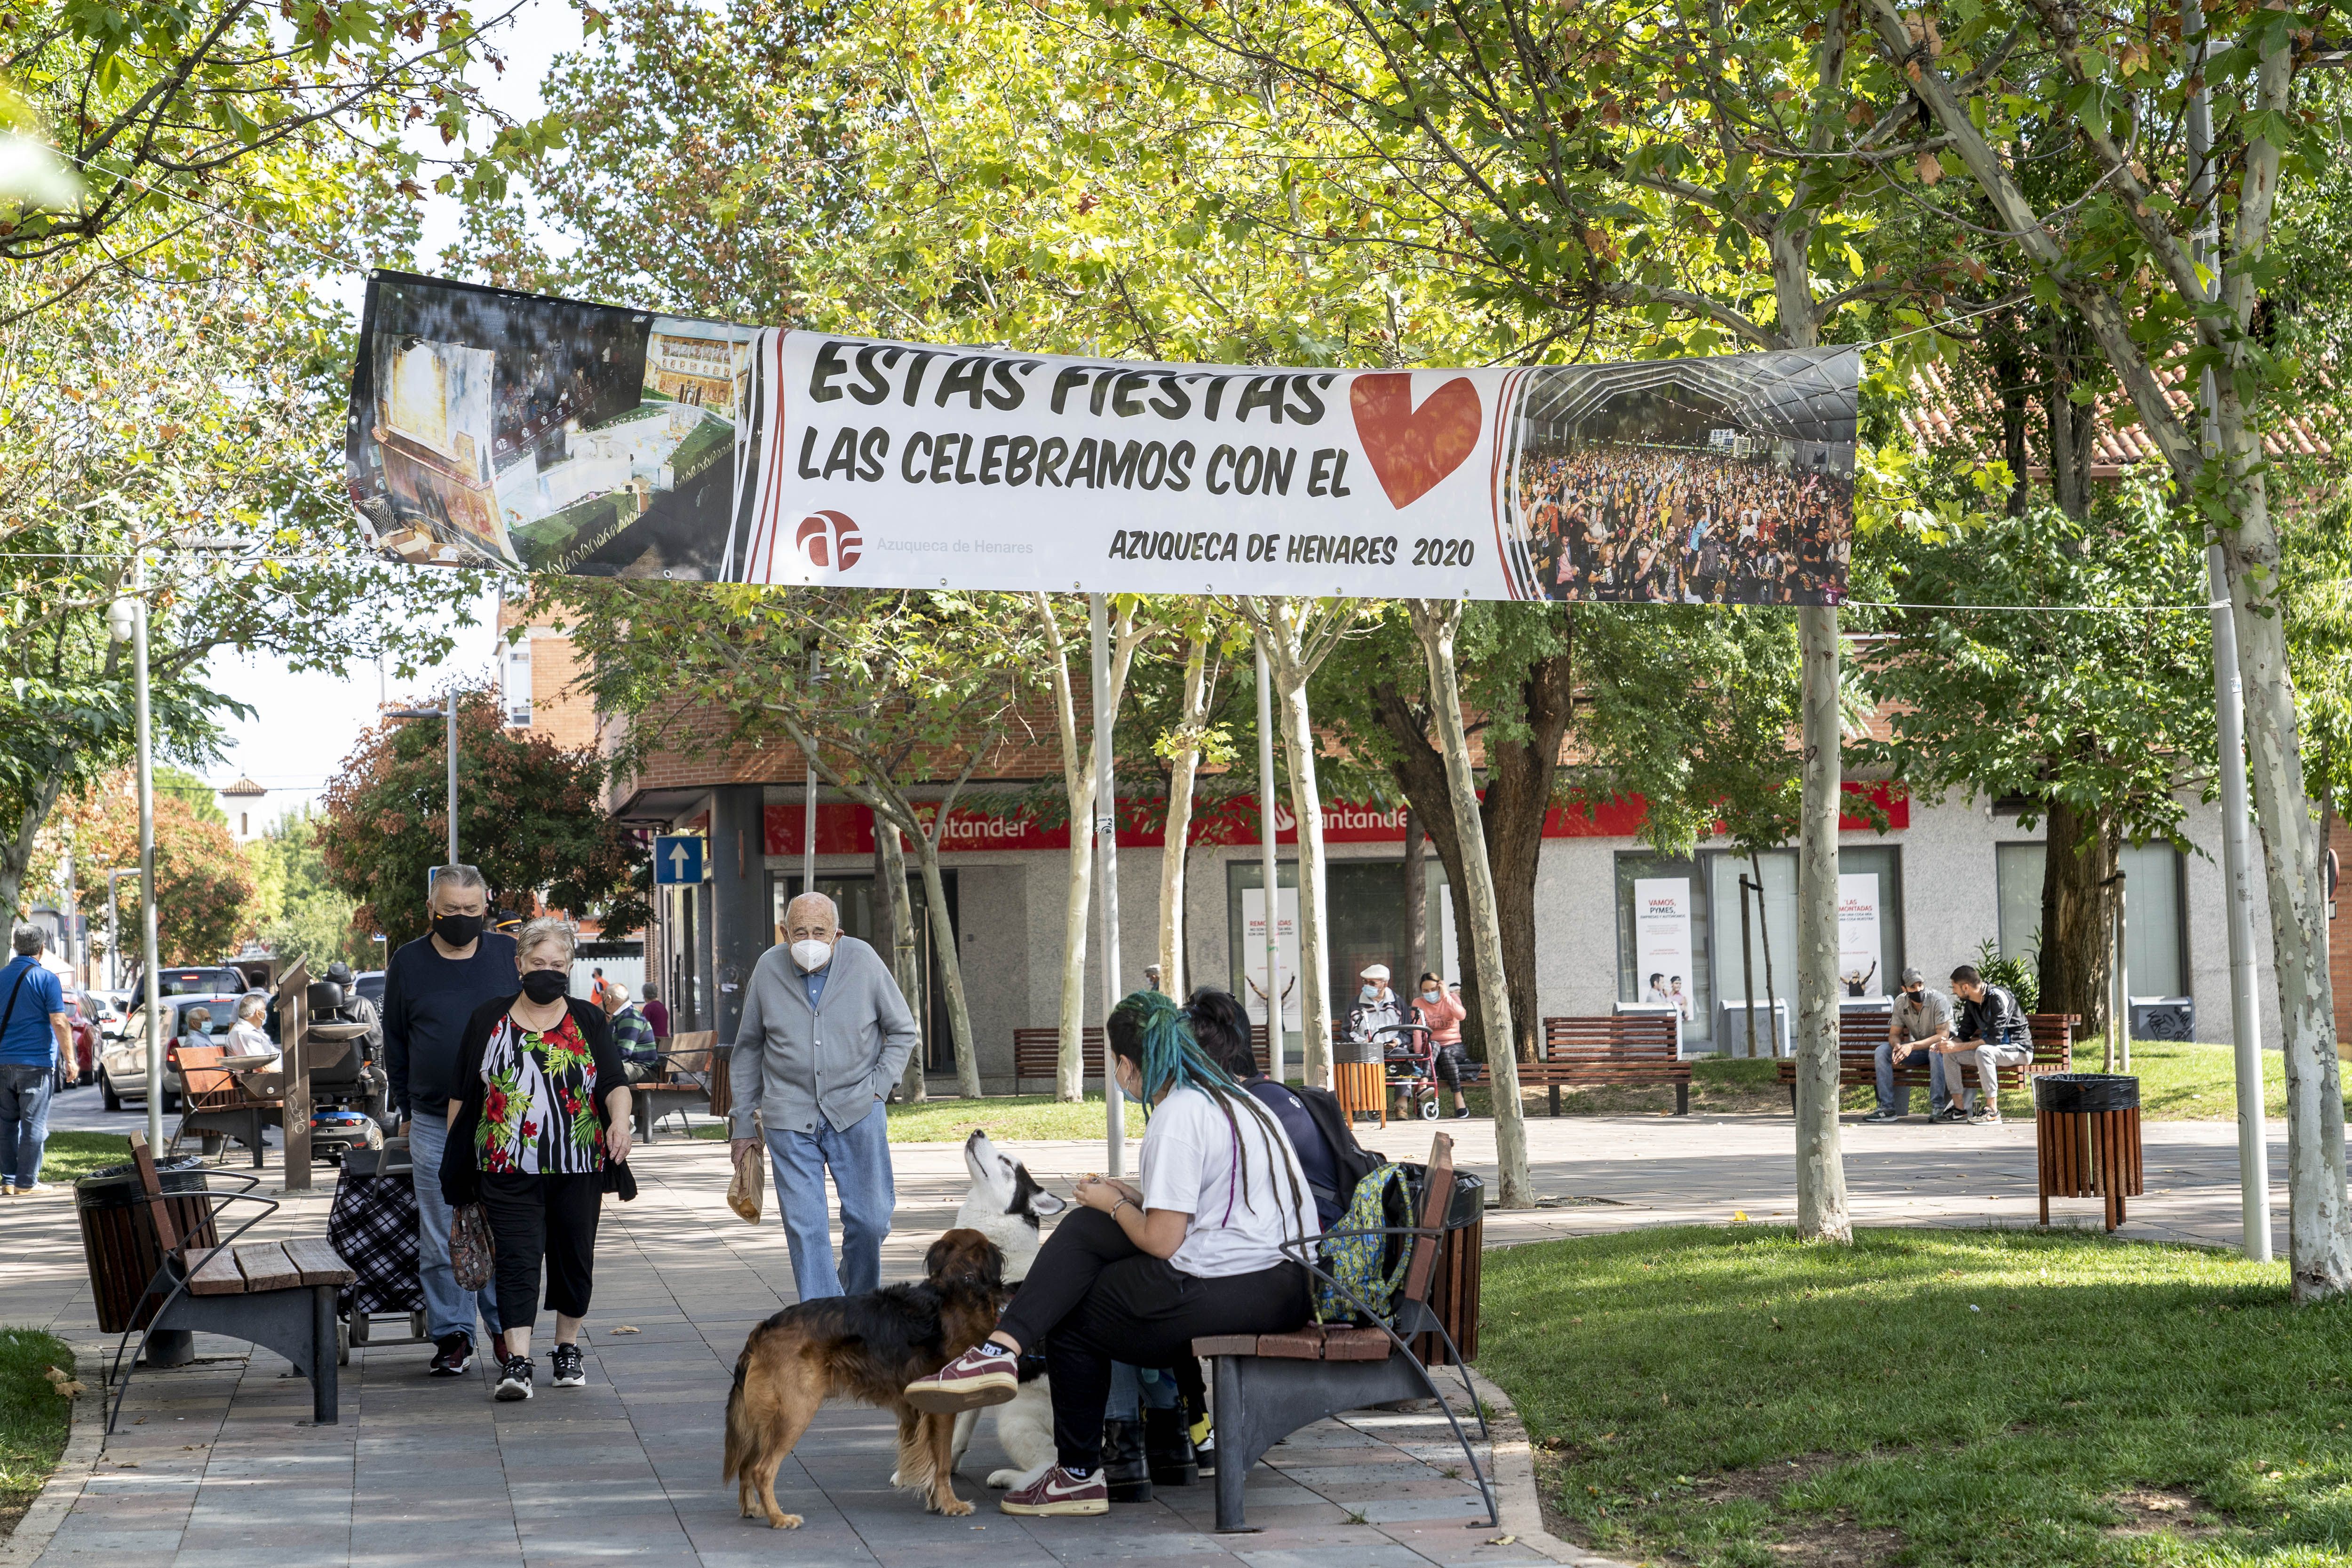 Una pancarta pide a los vecinos mesura durante las fiestas del pueblo Azuqueca de Henares que se encuentra en la frontera con Madrid.